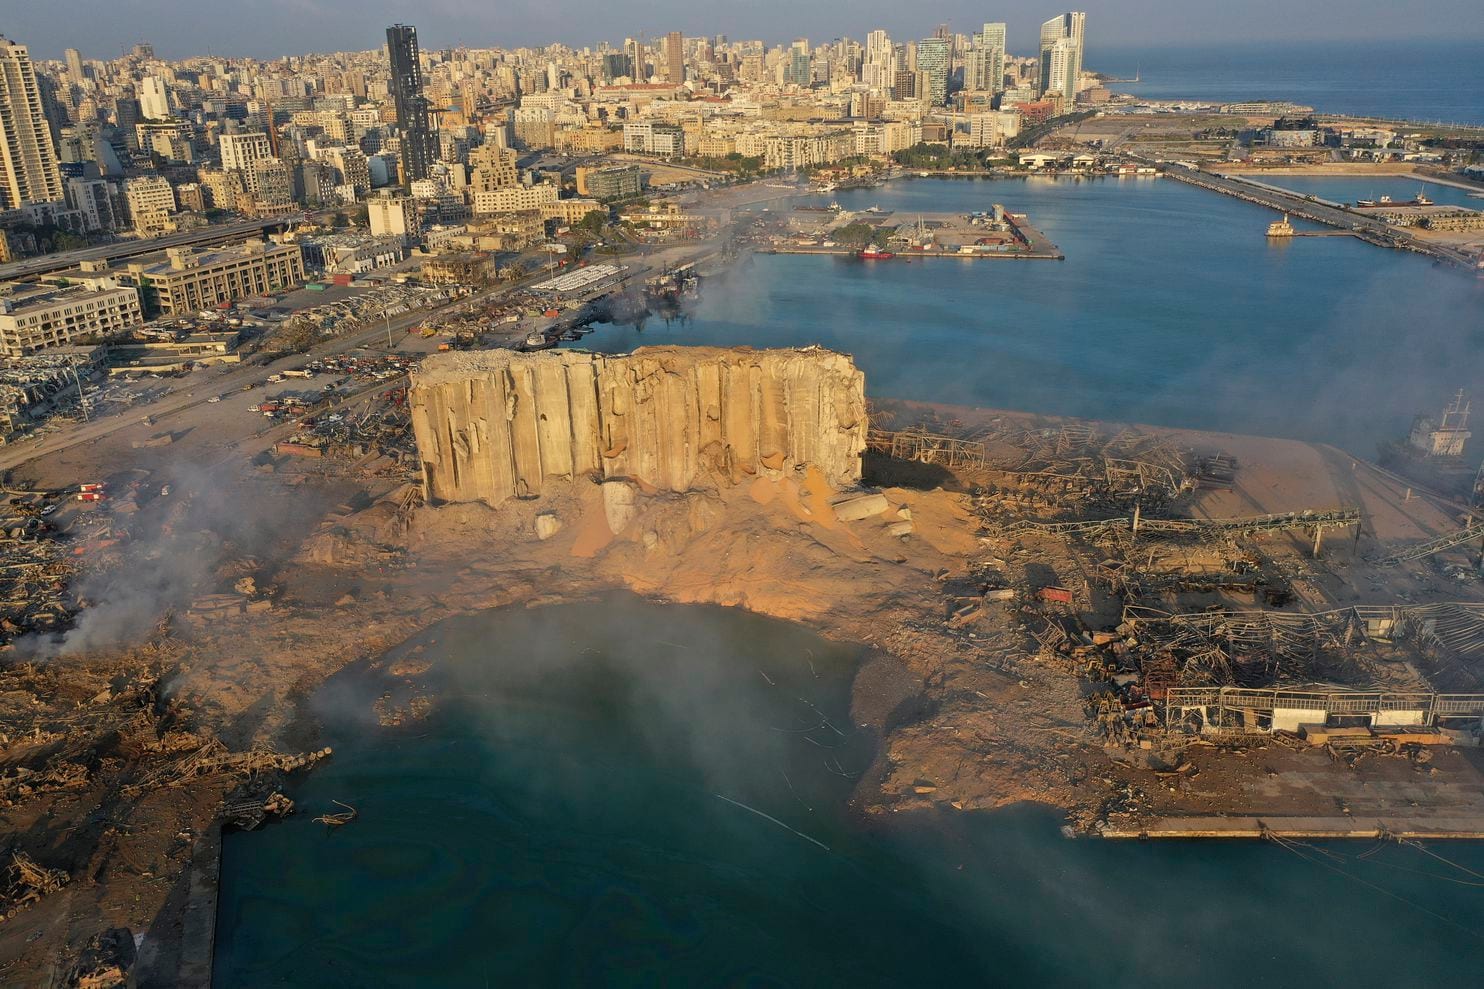 صور القمر الصناعي تظهر حجم الدمار في بيروت بعد الإنفجار